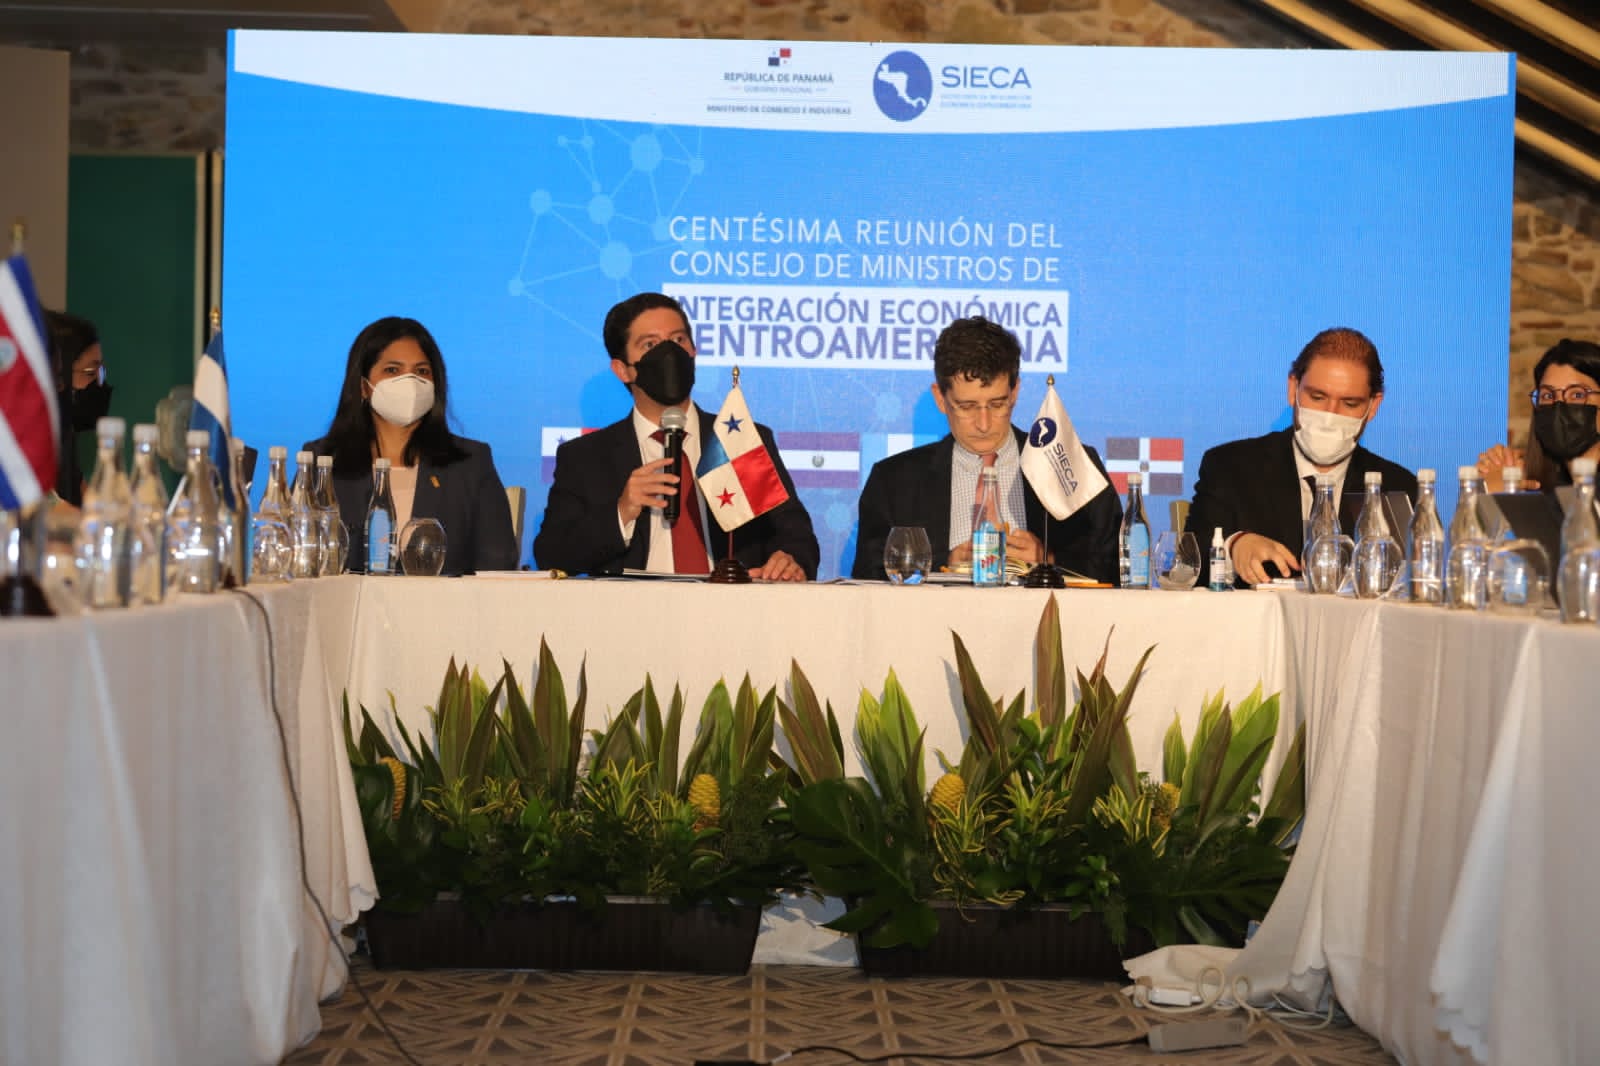 Reafirmado compromiso de Panamá con la integración económica centroamericana en COMIECO